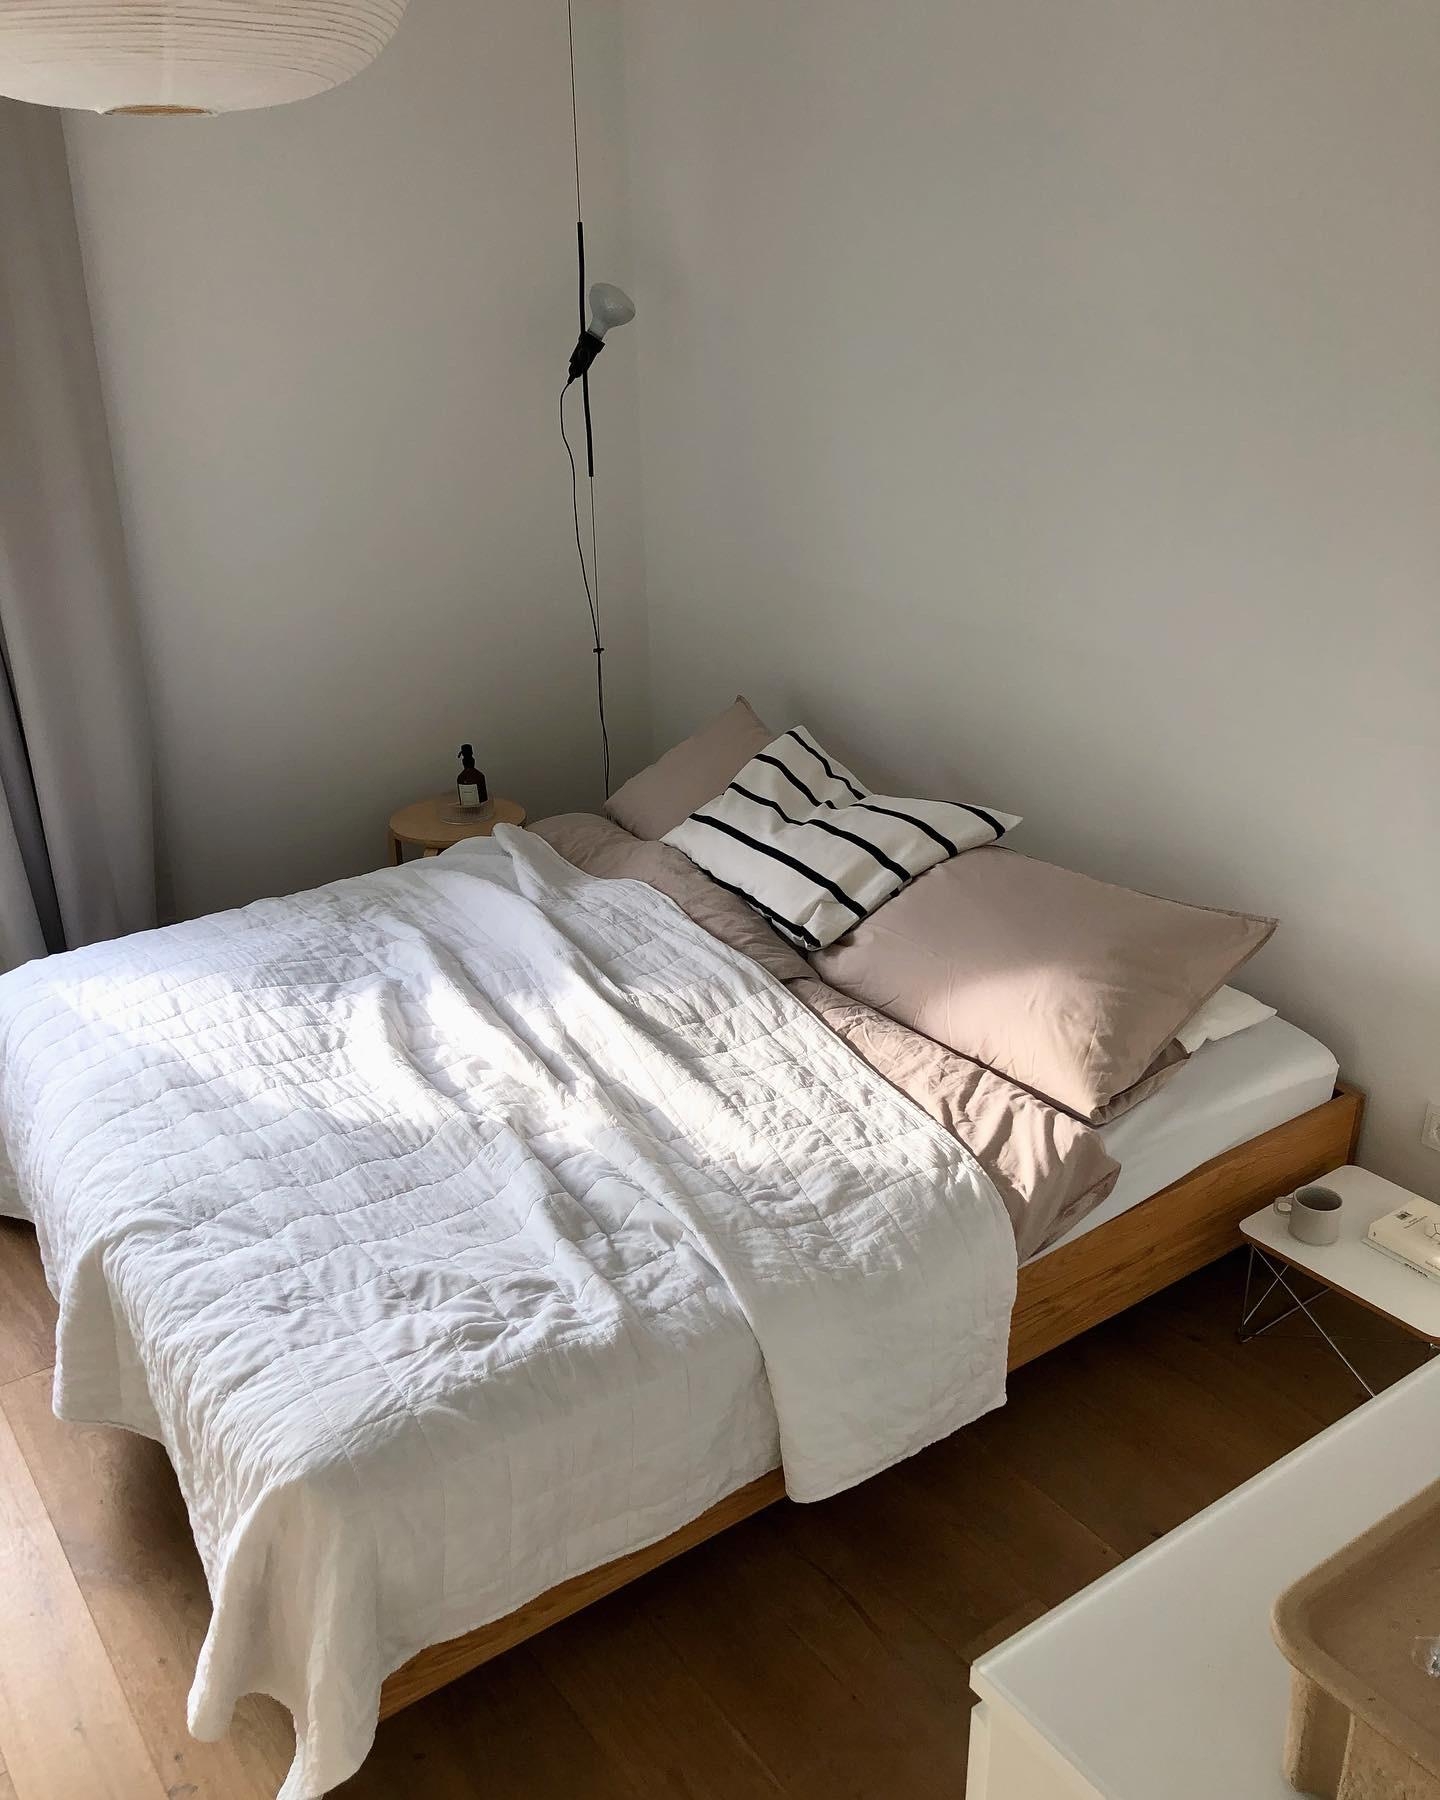 #schlafzimmer #bedroom #bett #bed #lampe #minimalistisch #skandi #scandi #interior #couchstyle